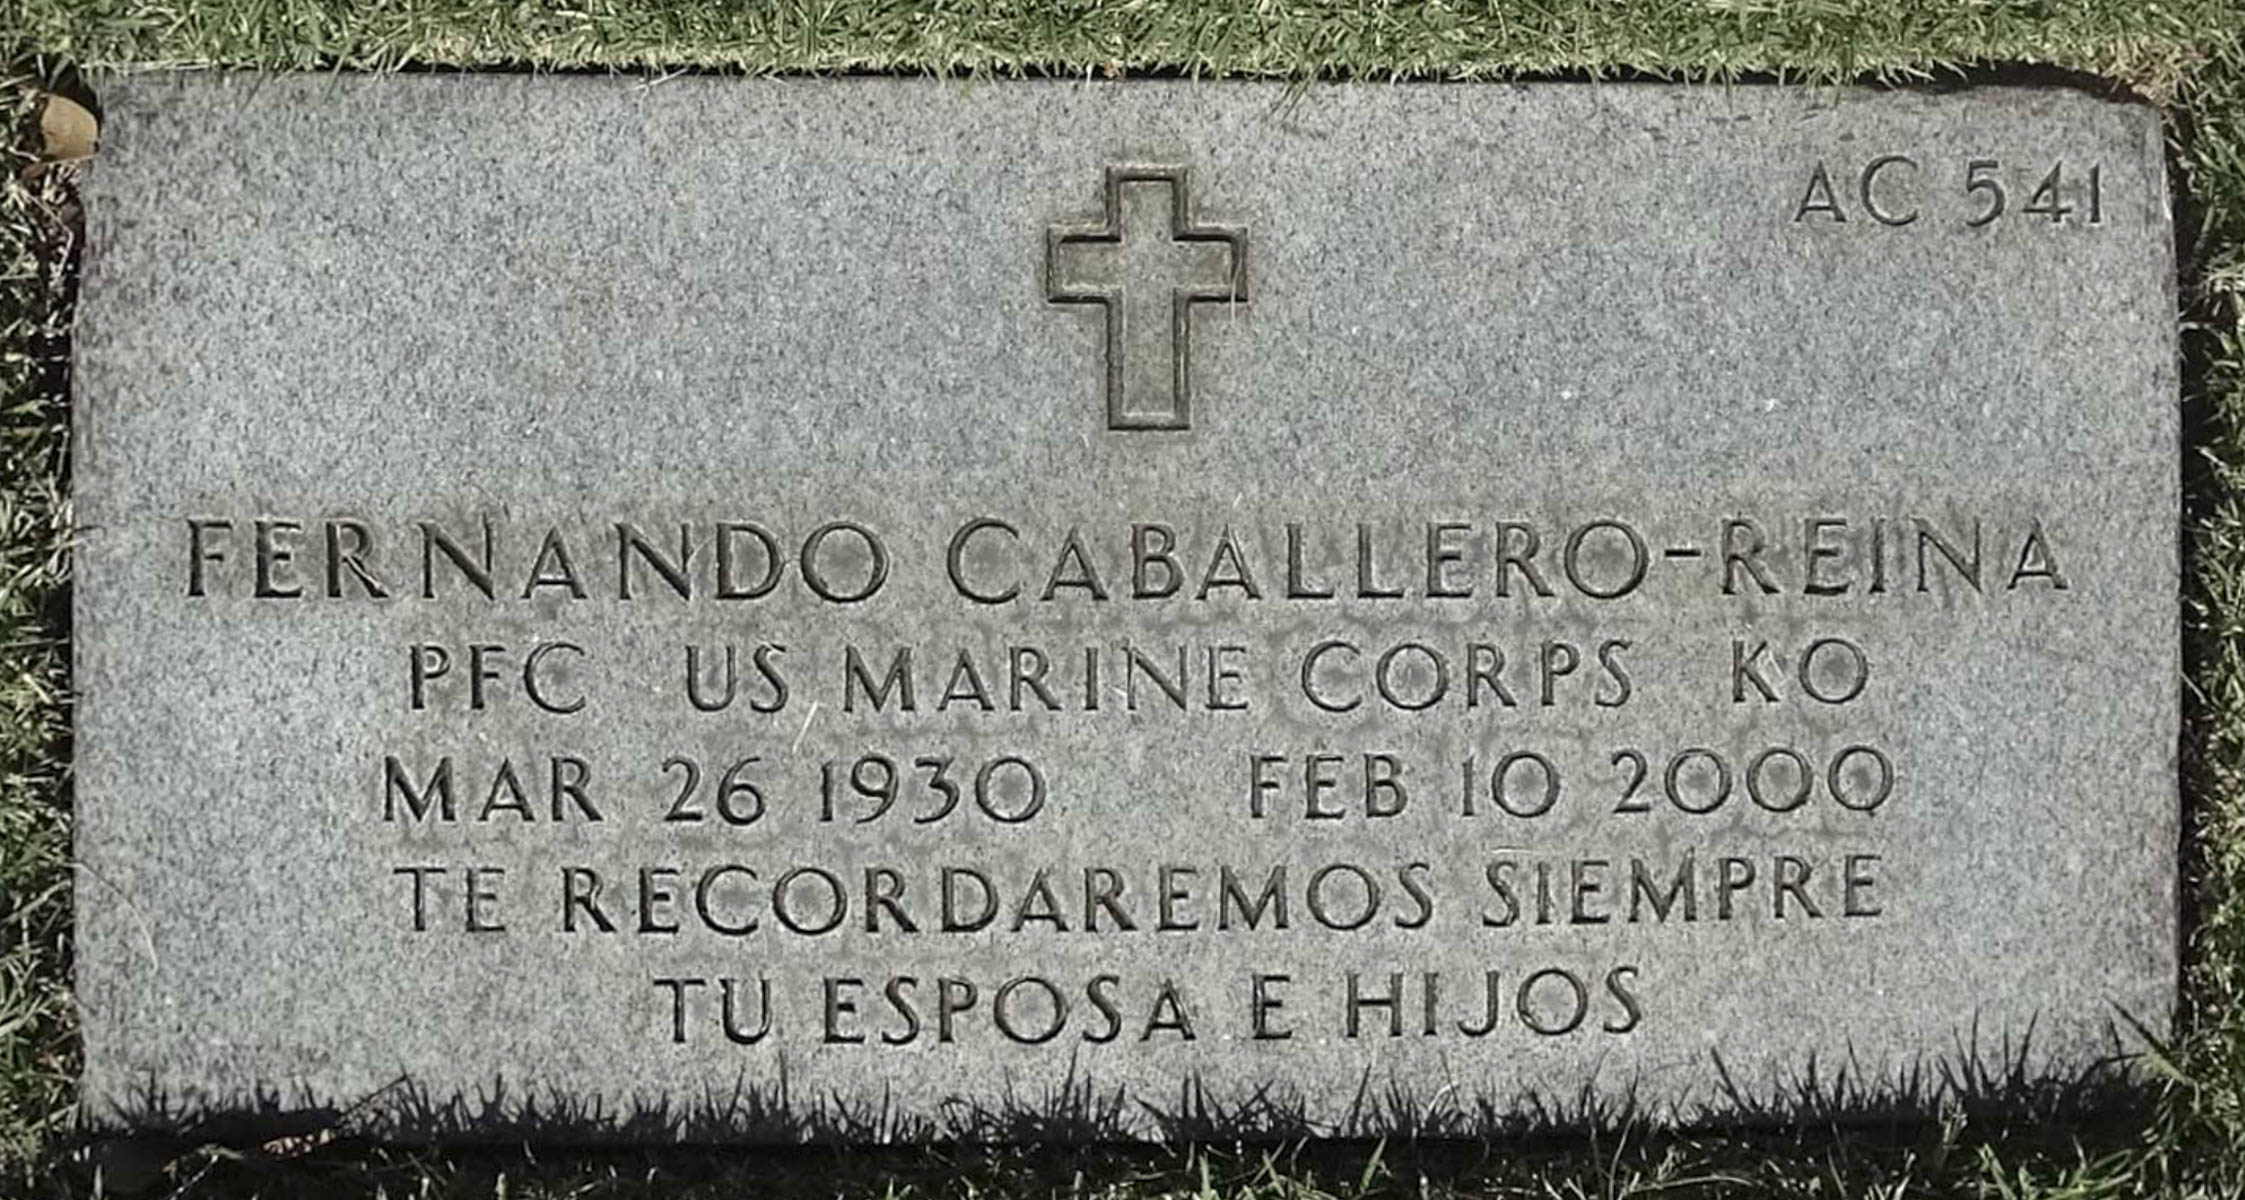 Fernando Caballero